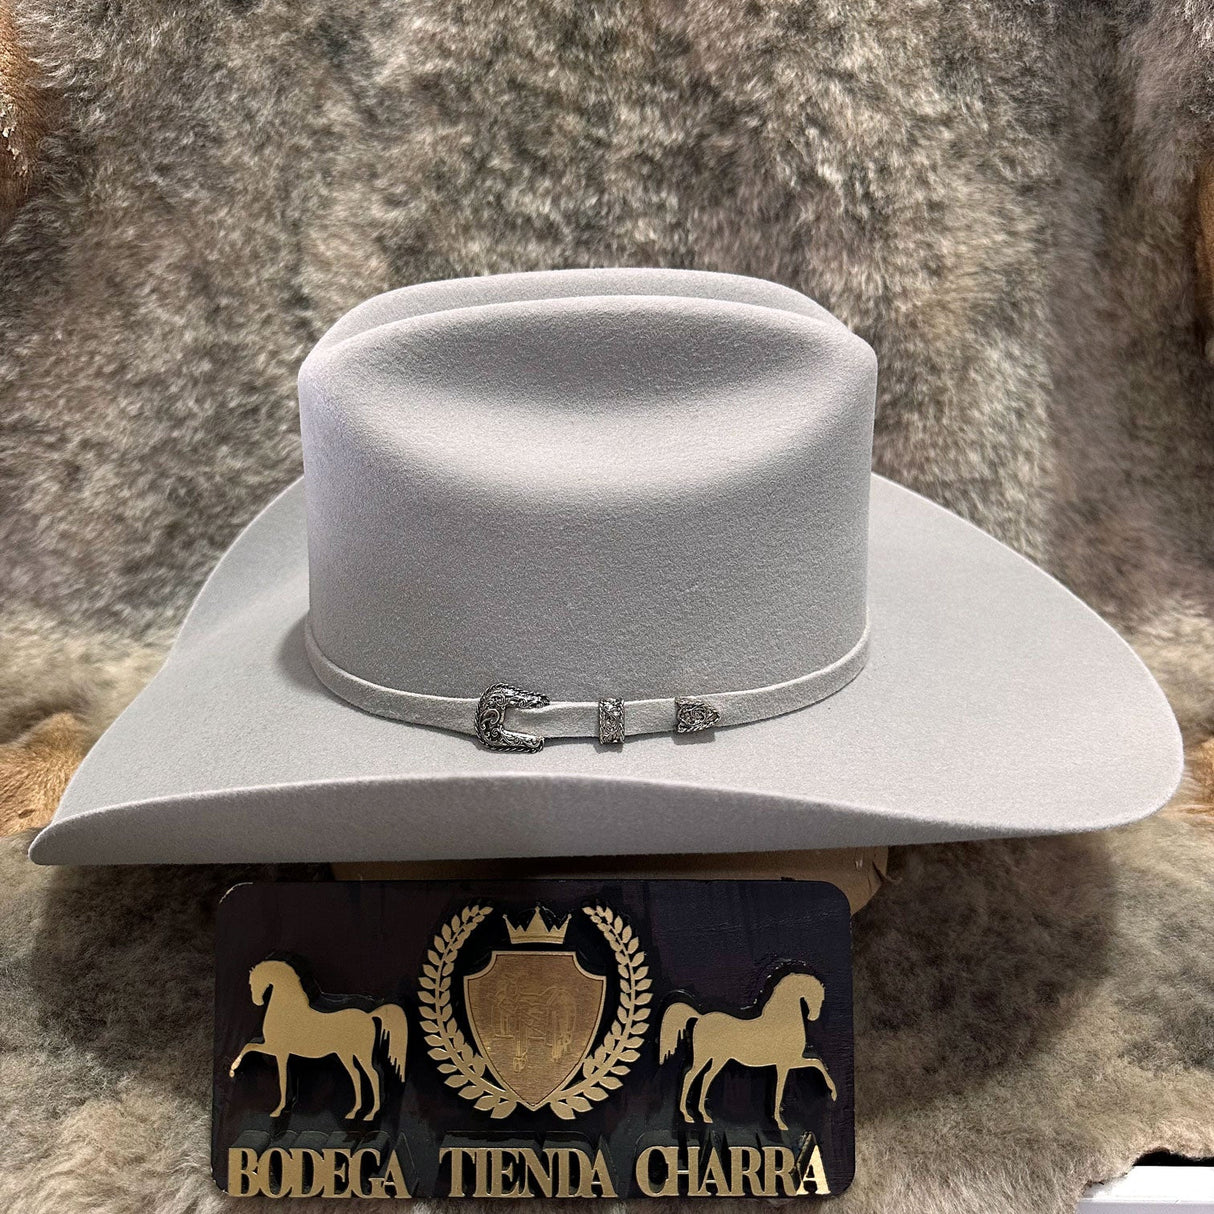 Texana Roper (color gris cristal) Tombstone - Tiendacharra.com - Bodega Tienda Charra